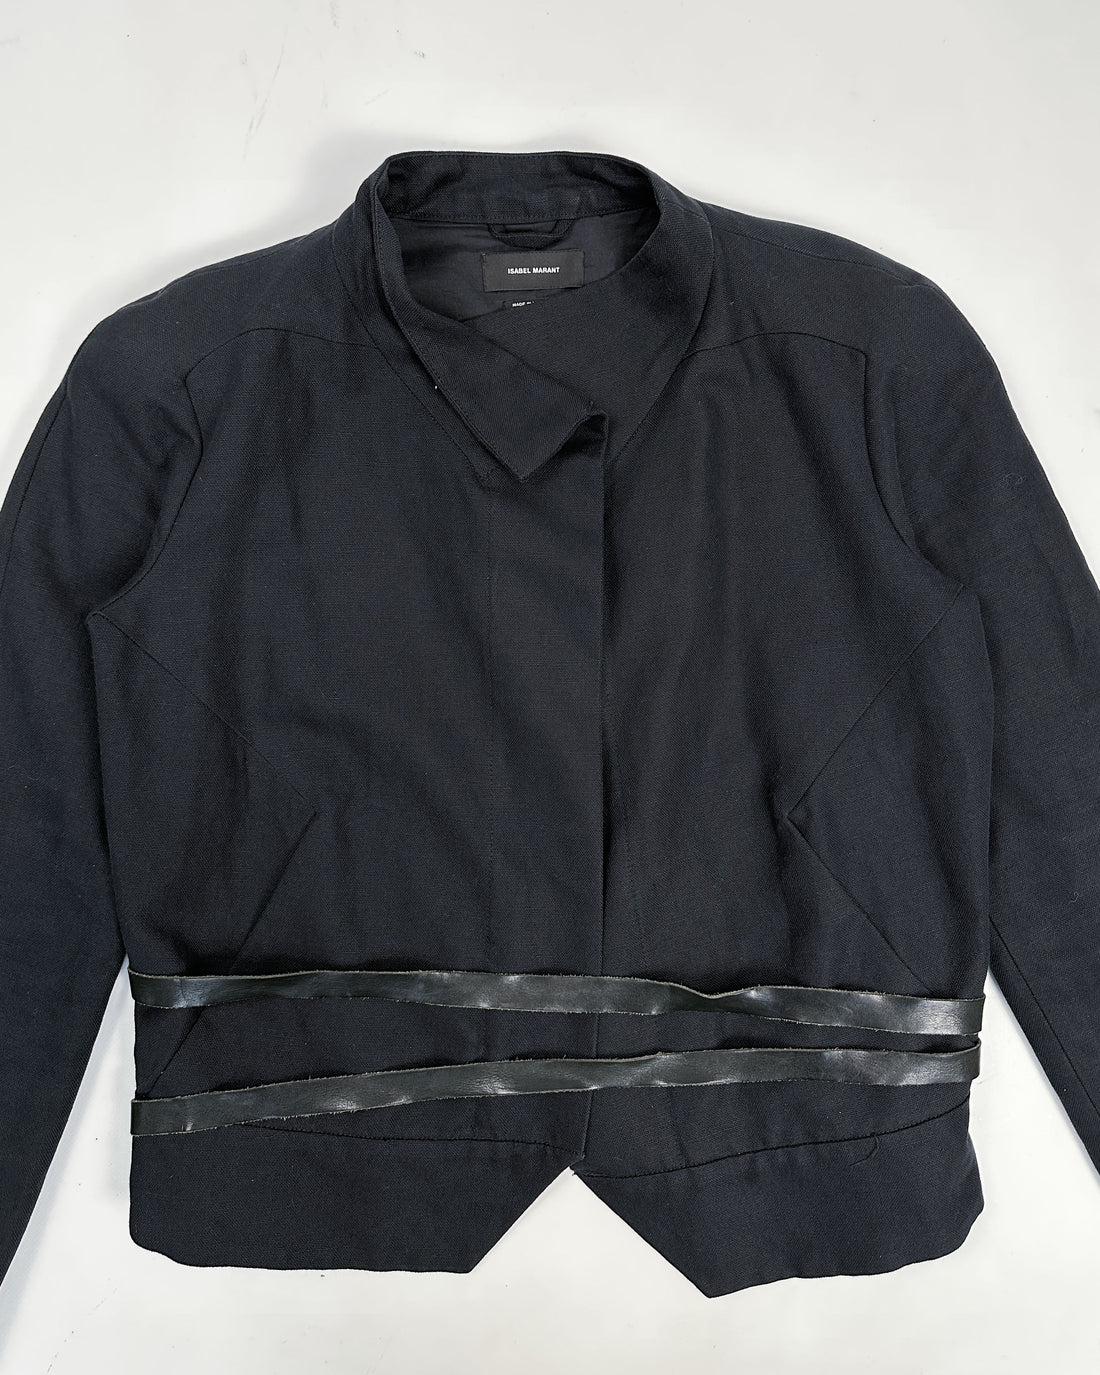 Isabel Marant Bondage Linen Black Jacket 1990's